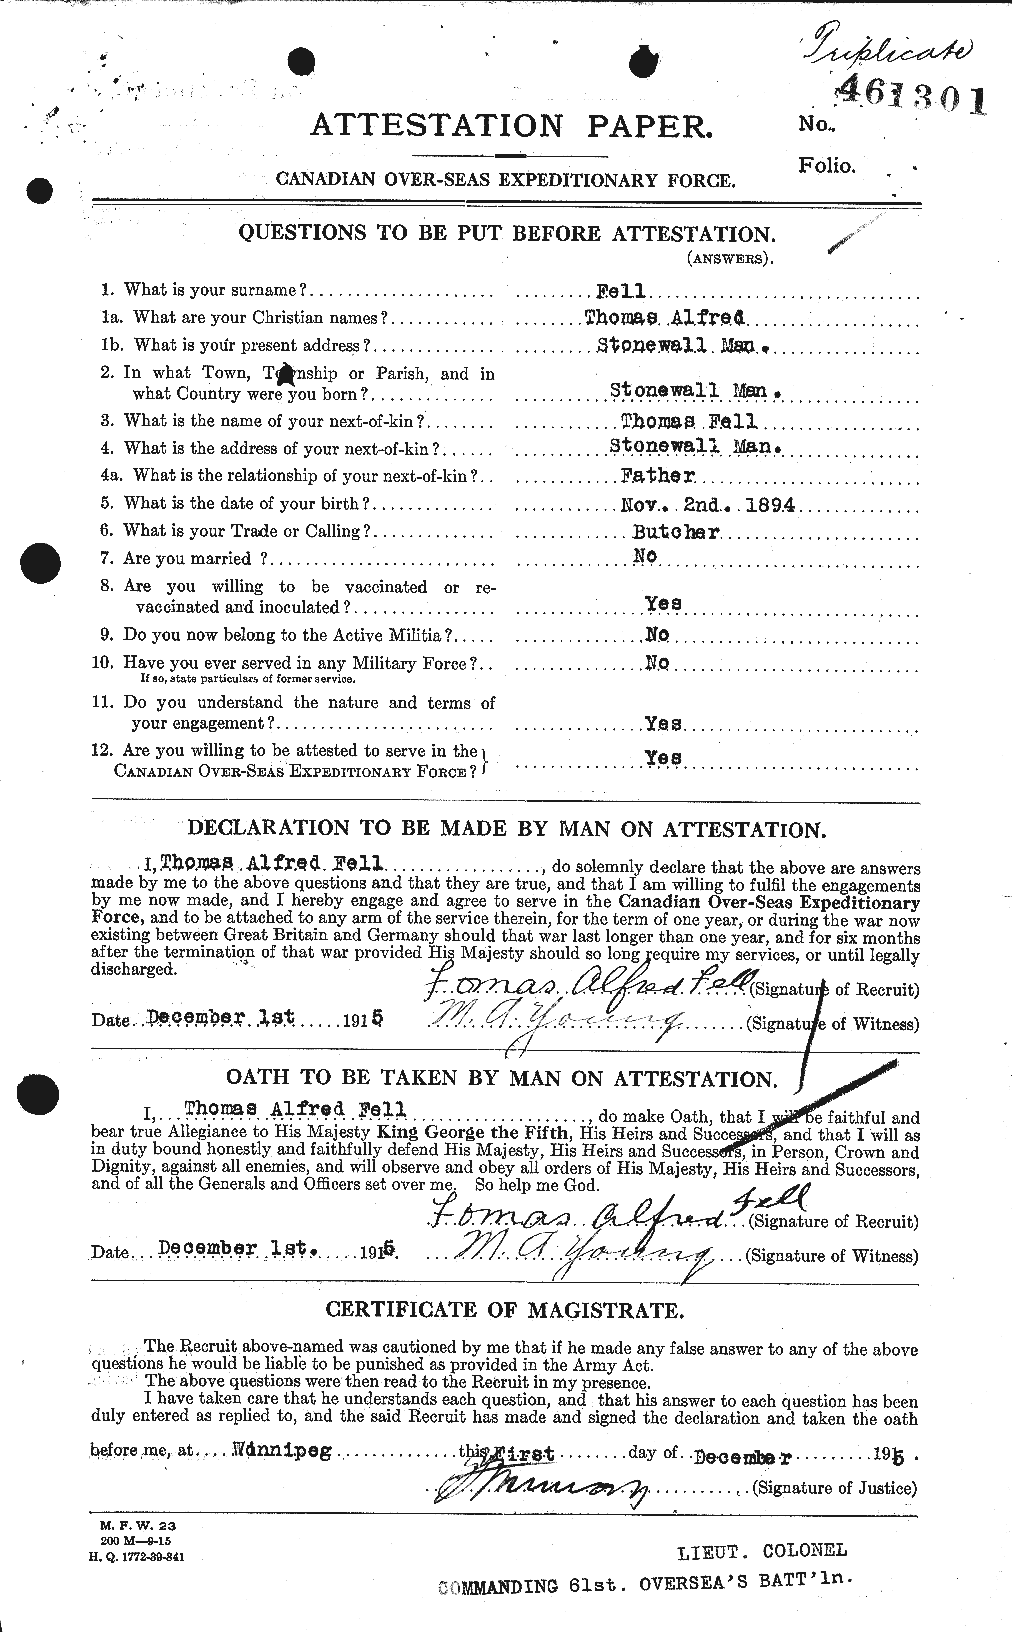 Dossiers du Personnel de la Première Guerre mondiale - CEC 321930a